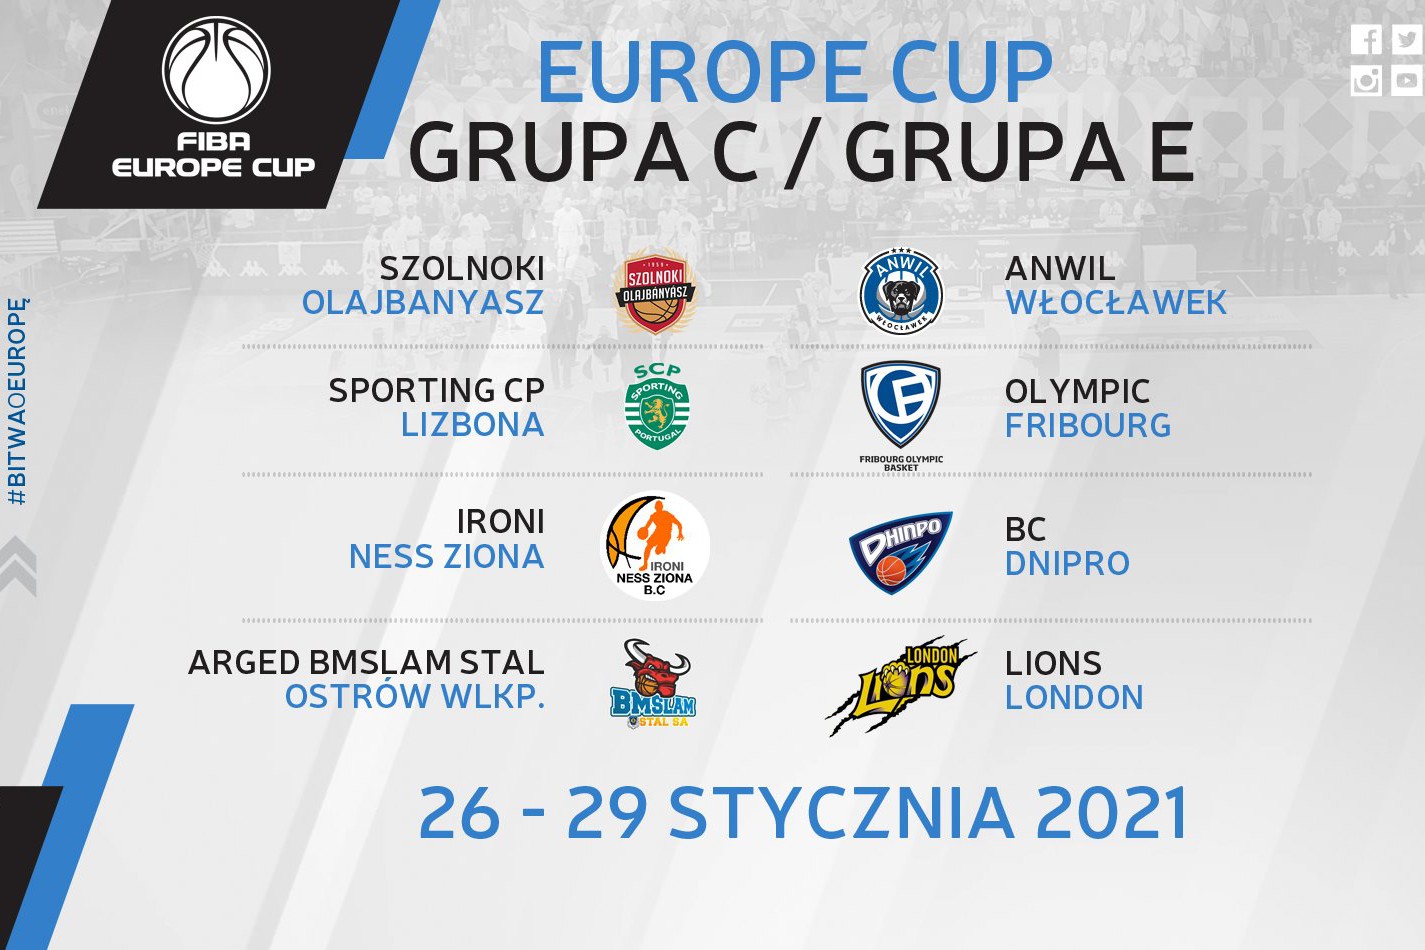 (Podwójna) Bańka FIBA Europe Cup we Włocławku